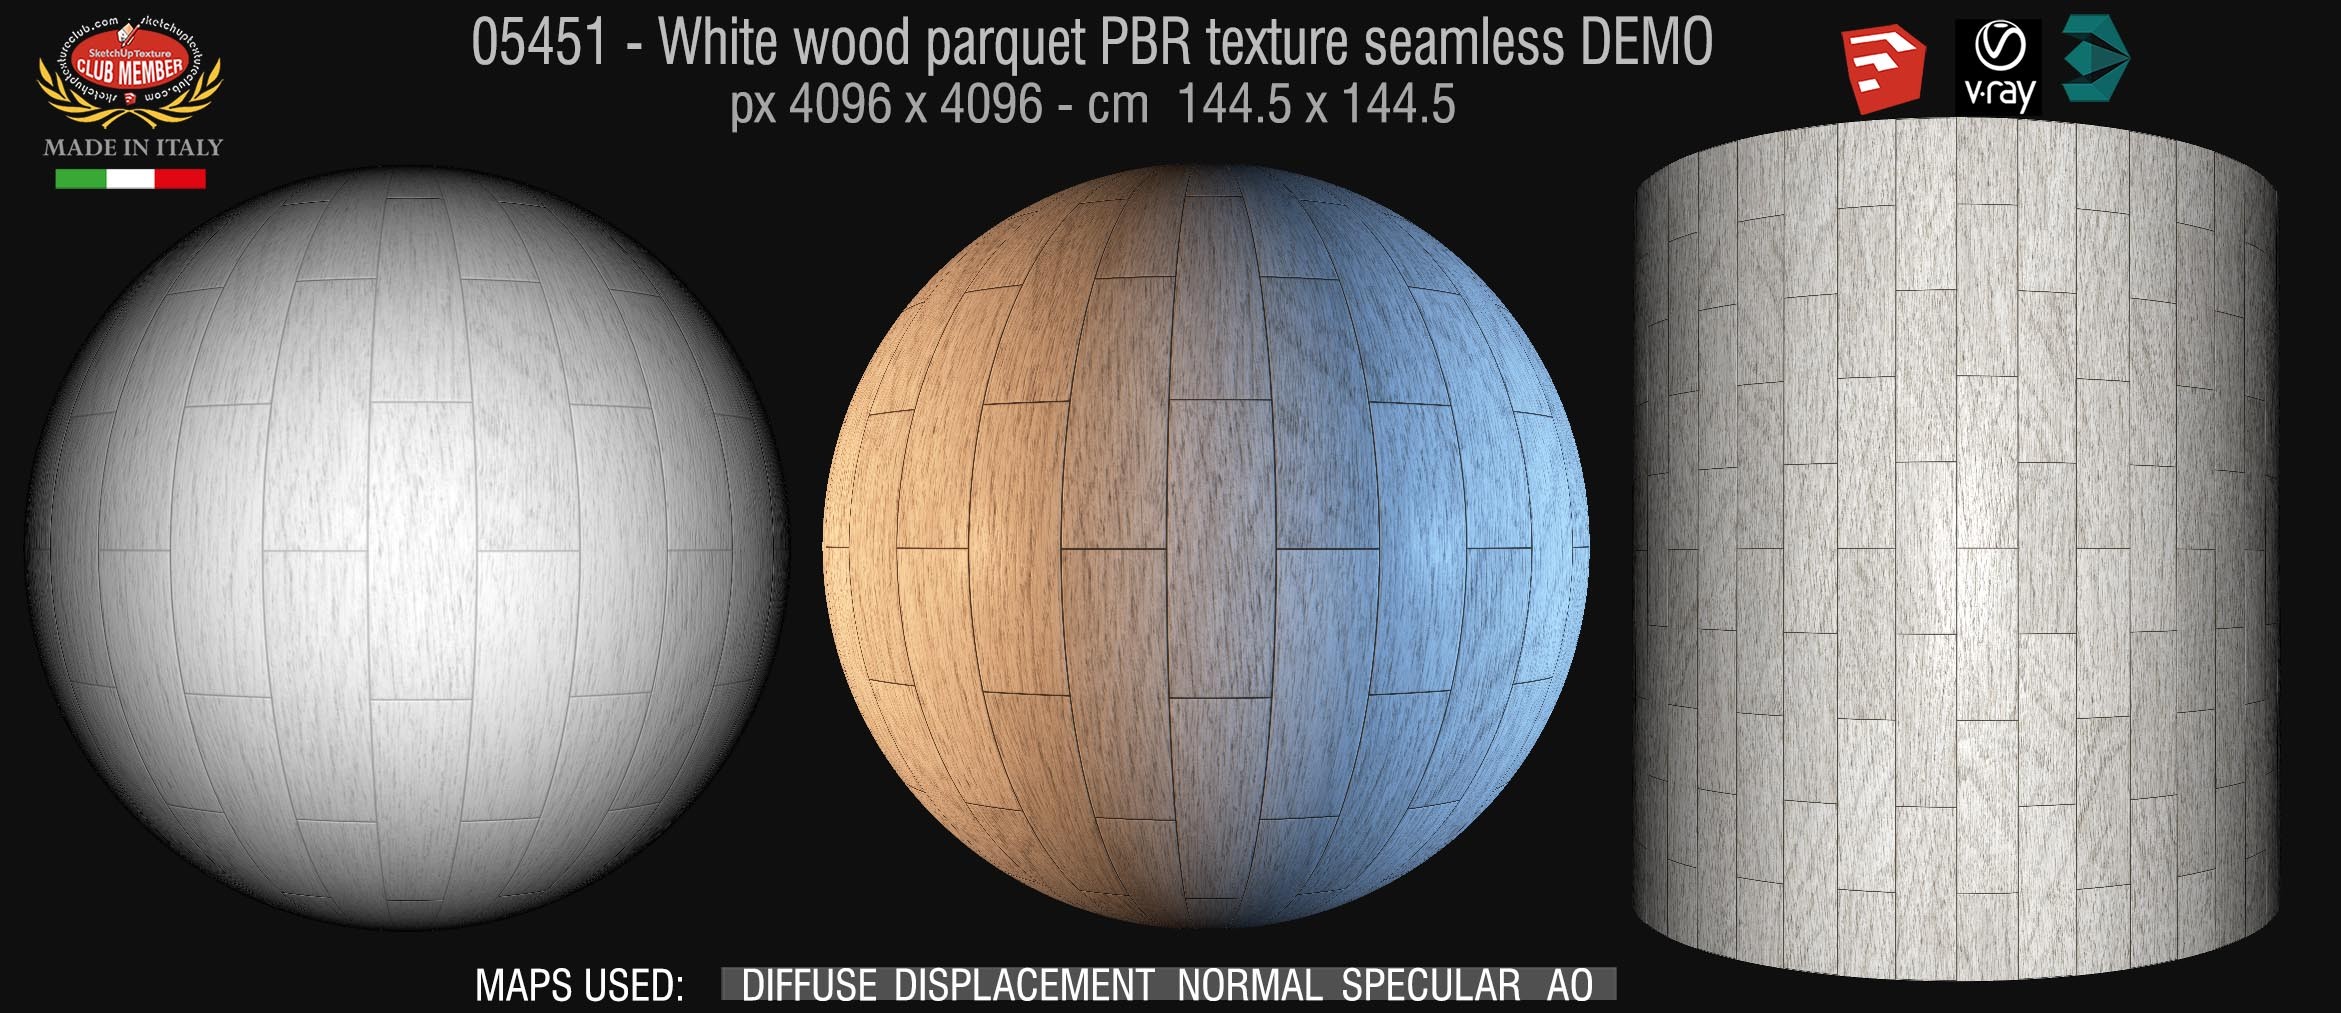 05451 white parquet PBR texture seamless DEMO